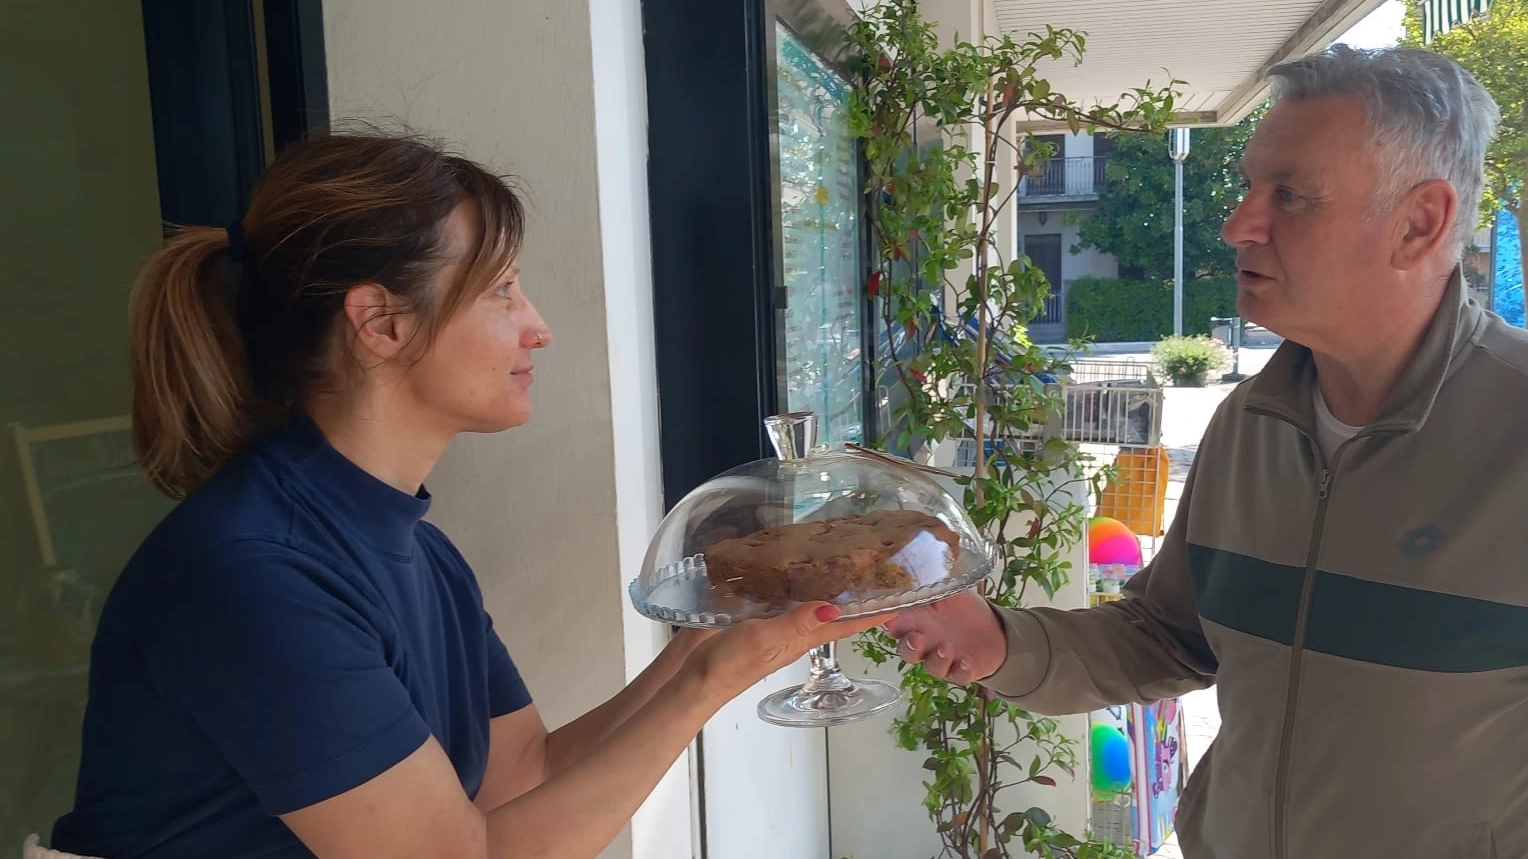 La cesenate Elisa Marzocchi ha lasciato il suo lavoro da manager per aprire ‘ImpastaRicordi’, home food con le ricetta ispirate dalla nonna